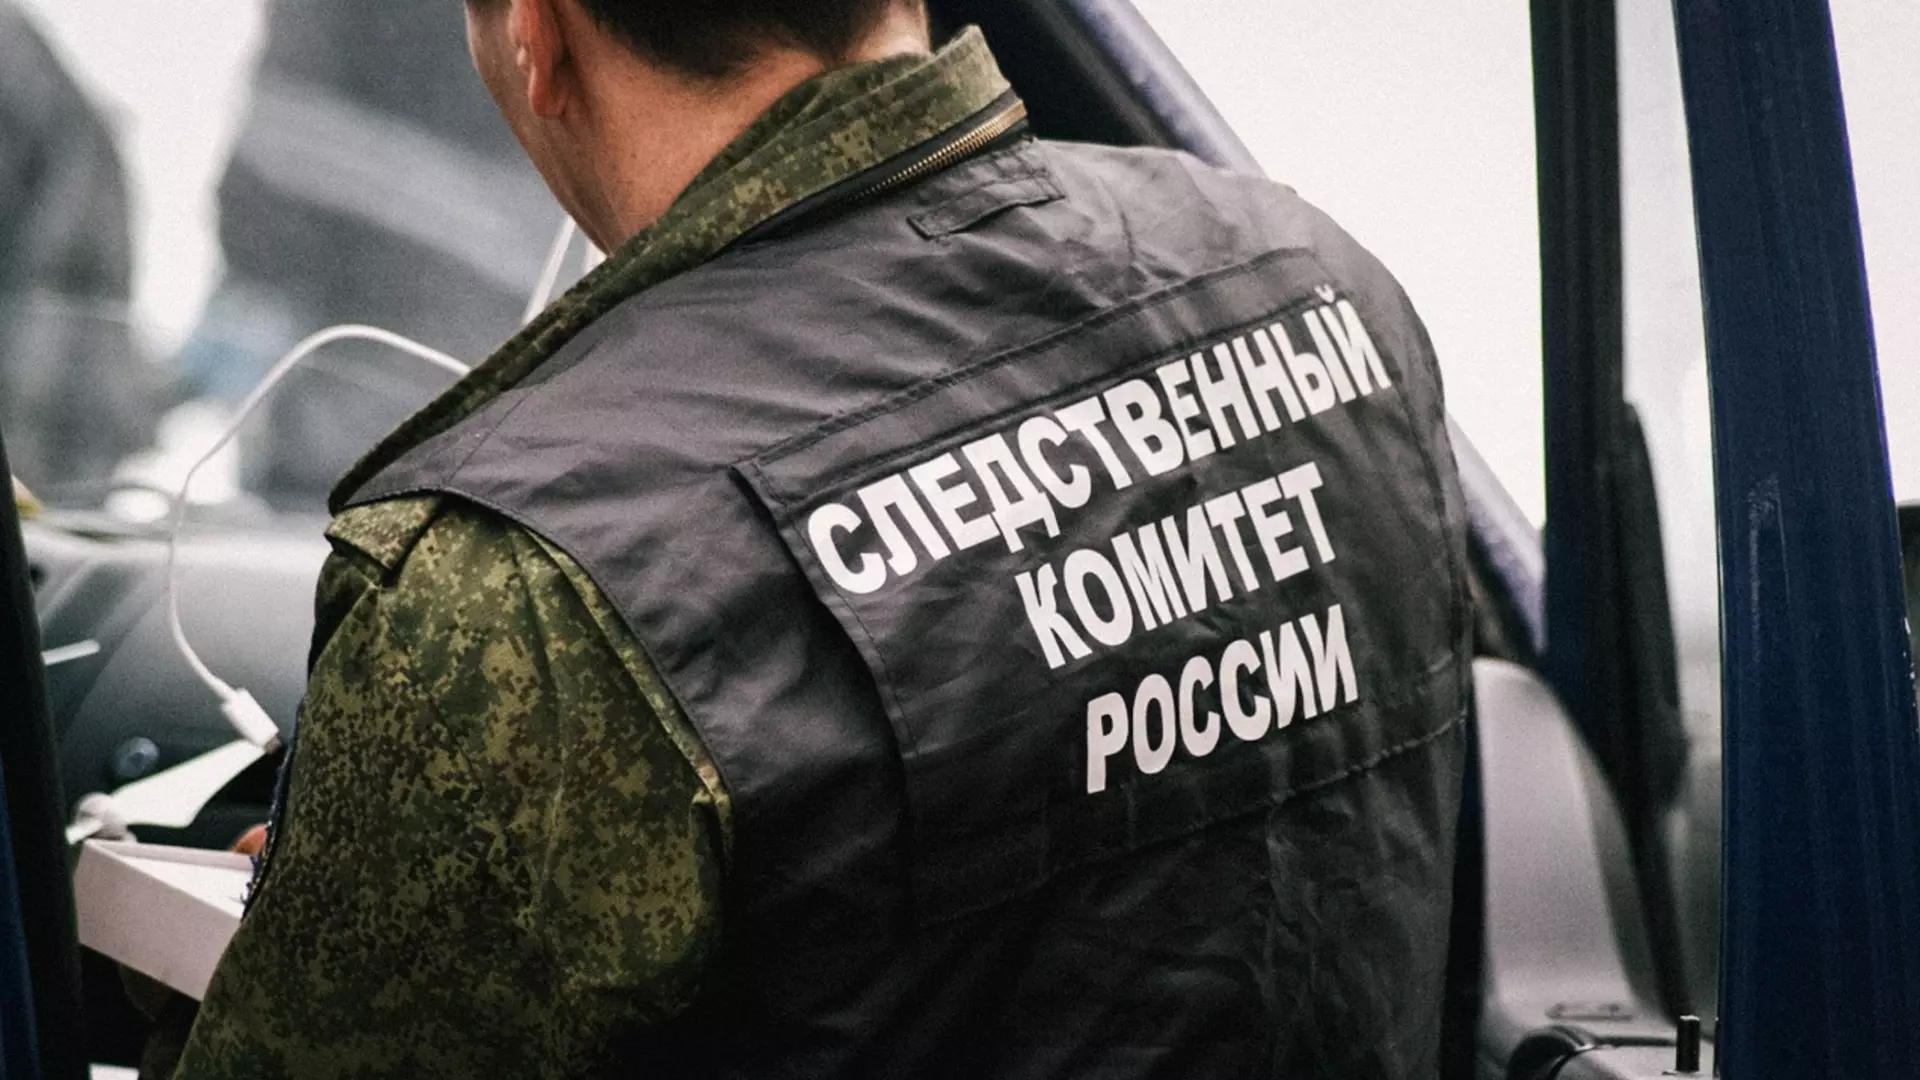 Глава СК России взял на контроль ситуацию с ненормативным пандусом в Ижевске